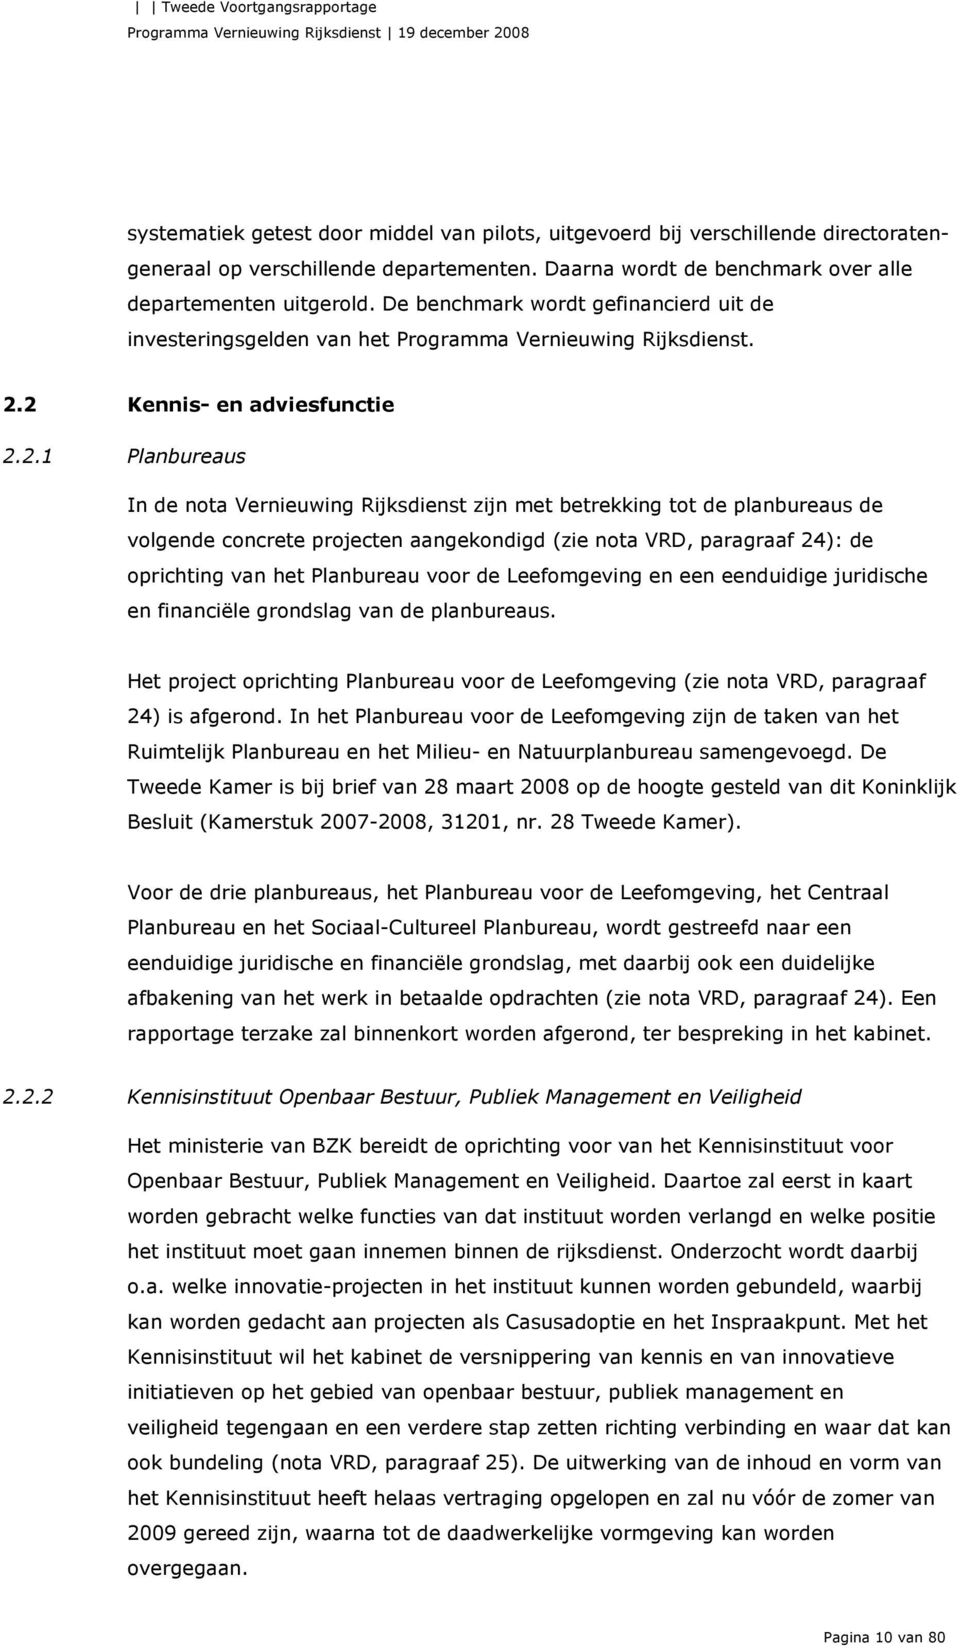 2 Kennis- en adviesfunctie 2.2.1 Planbureaus In de nota Vernieuwing Rijksdienst zijn met betrekking tot de planbureaus de volgende concrete projecten aangekondigd (zie nota VRD, paragraaf 24): de